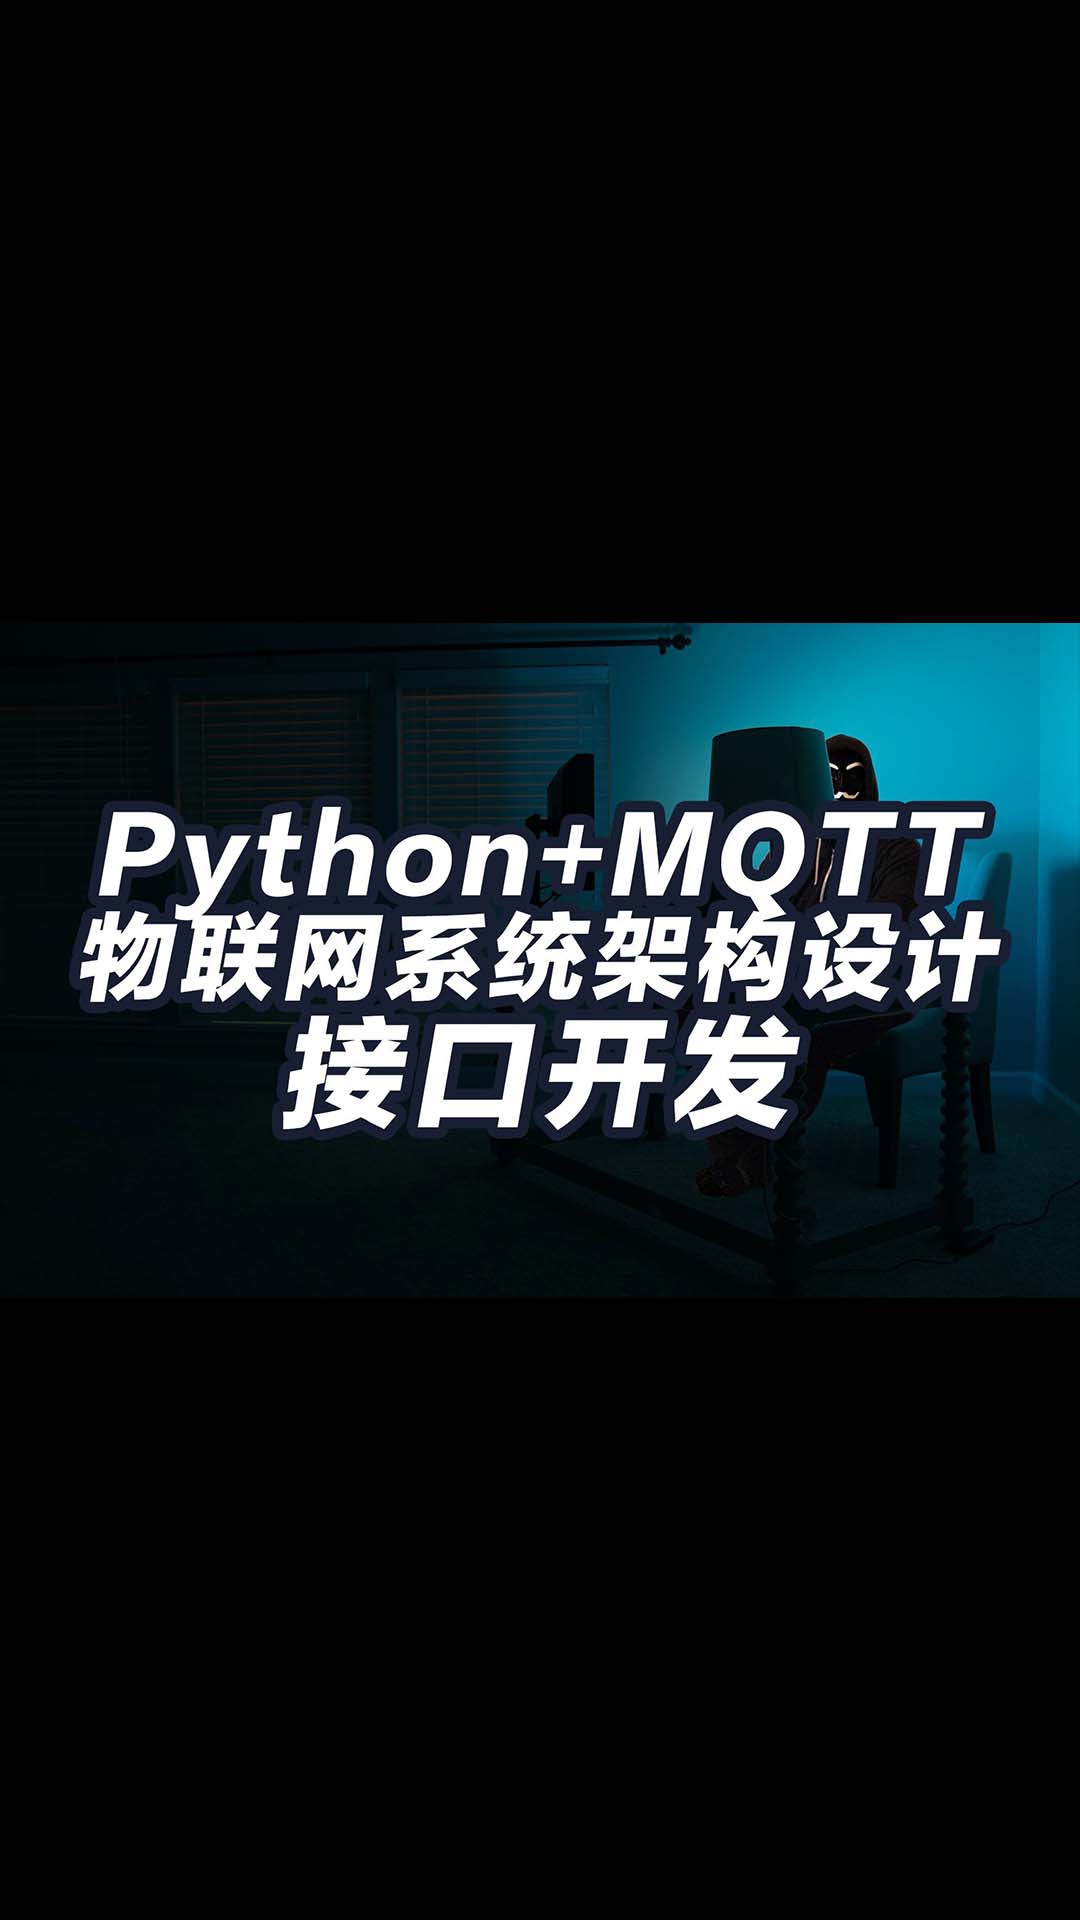 保姆教程 物聯網系統結構概述 如何用python開發接口 通過mqtt控制設備